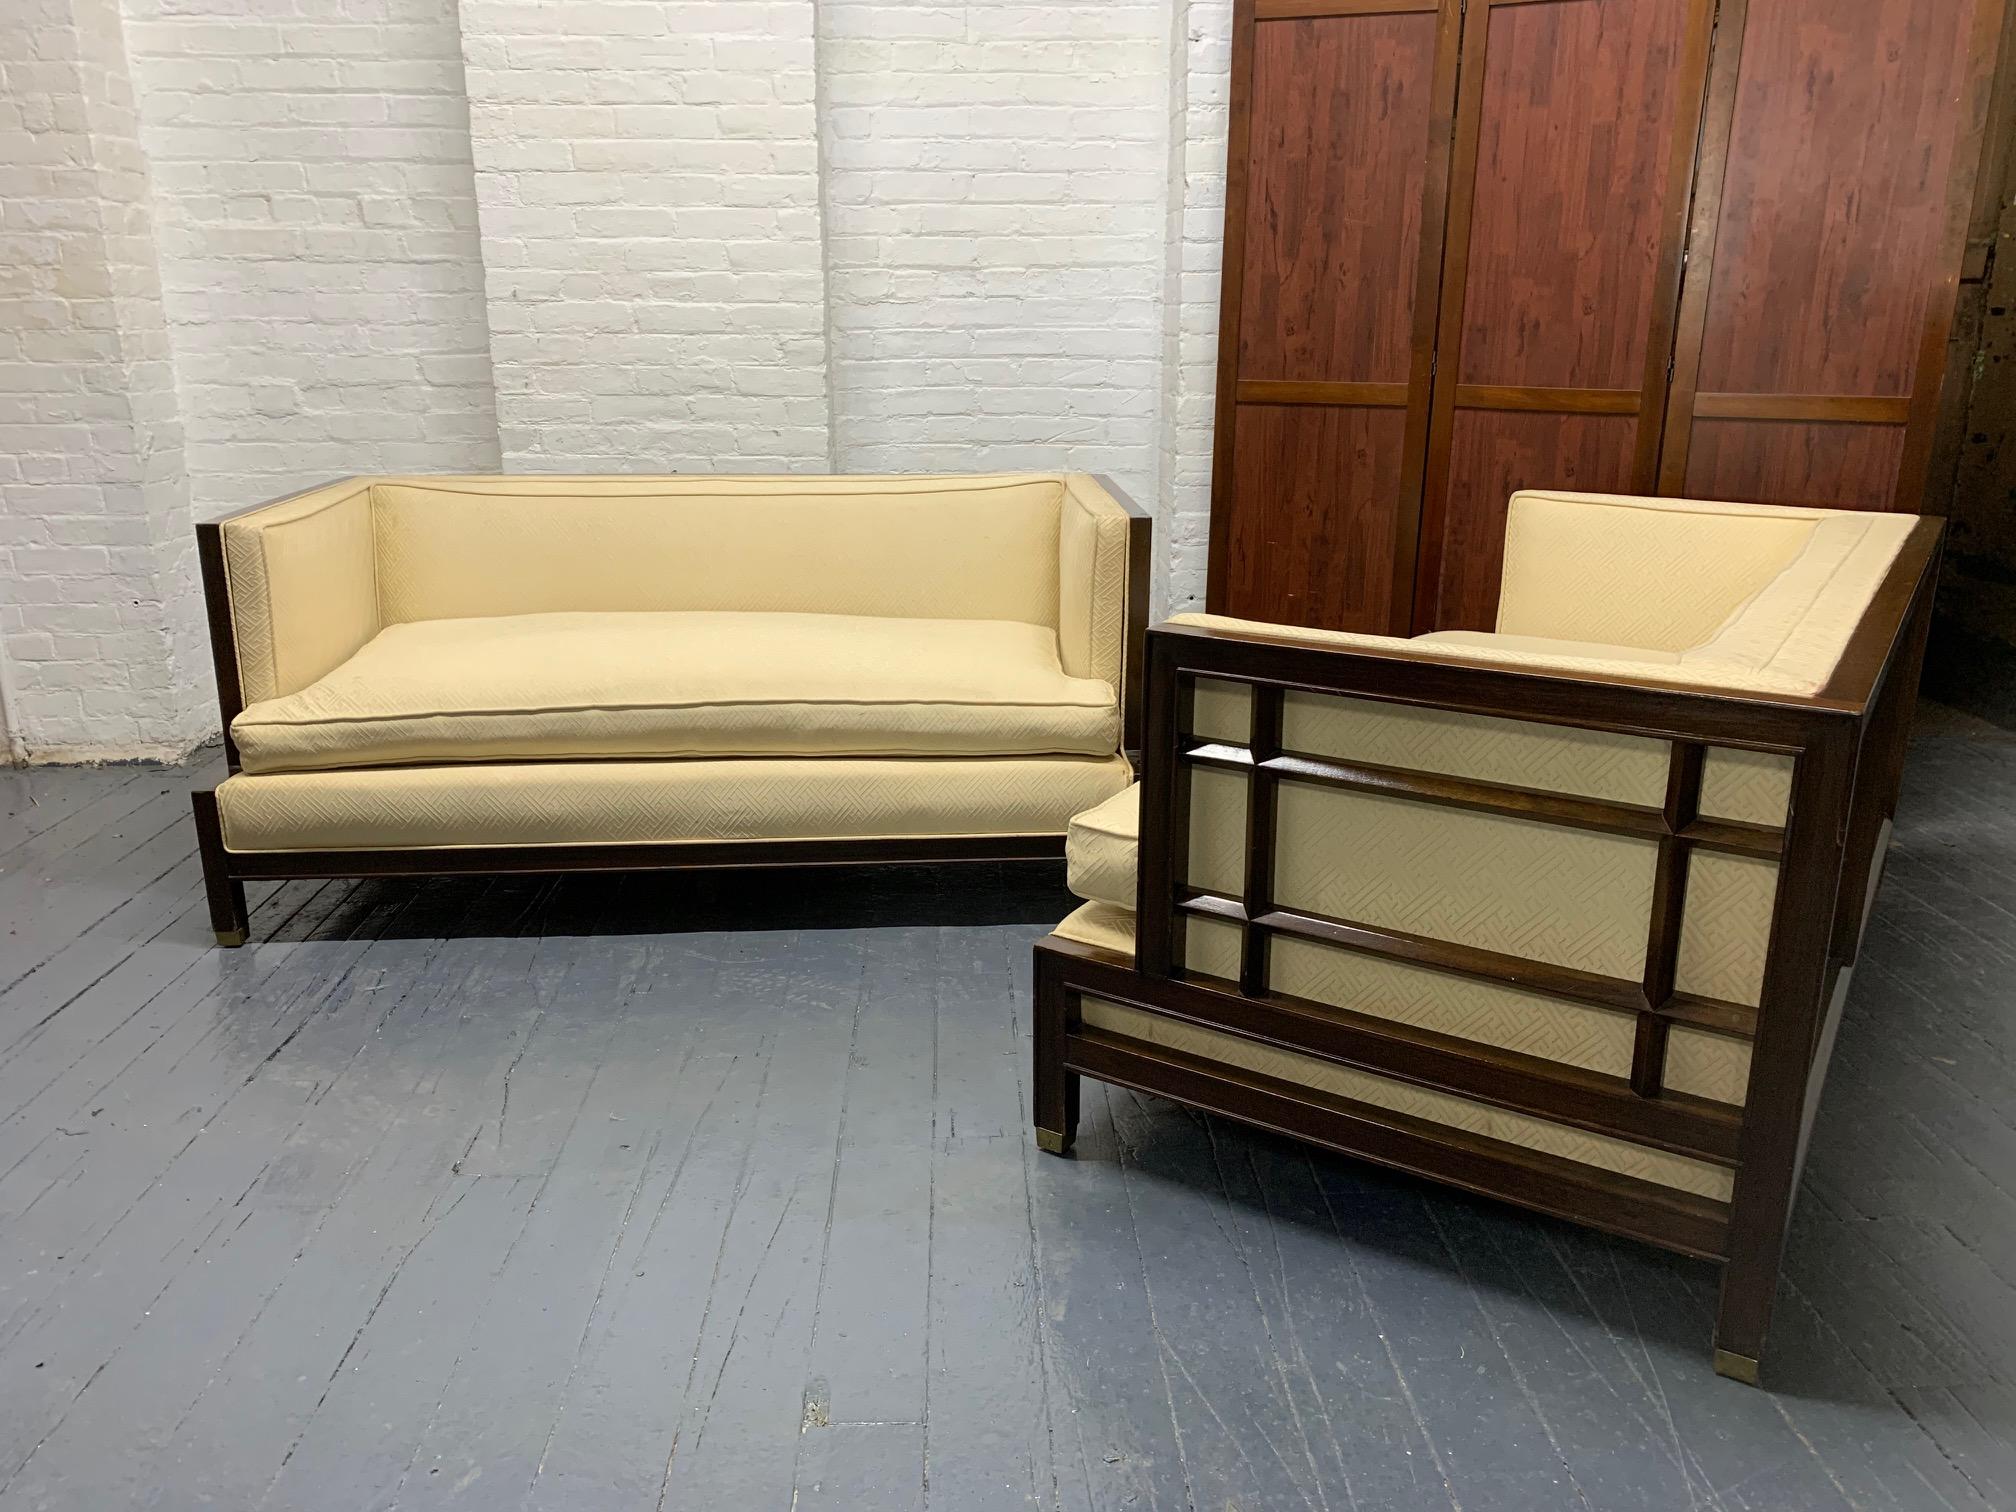 Ein Paar James Mont-Sofas aus Nussbaumholz. Das Gestell der Sofas ist aus Nussbaumholz, die Seiten sind vergittert und die Sitzfläche besteht aus losen Kissen.